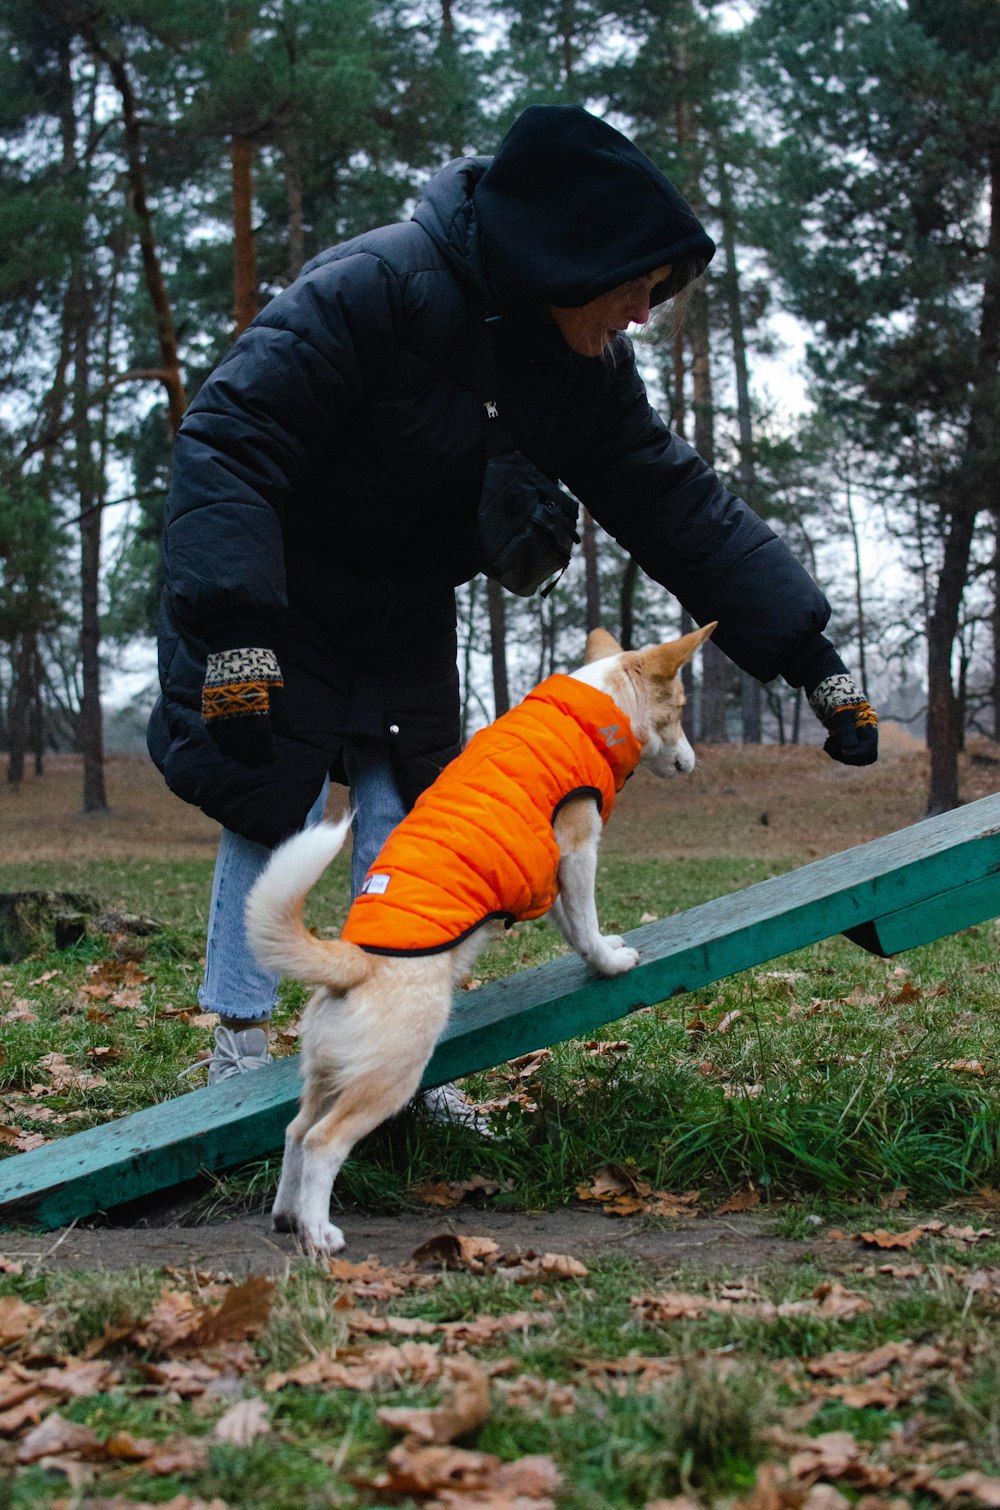 주황색 조끼를 입은 개가 경사로에 서 있다